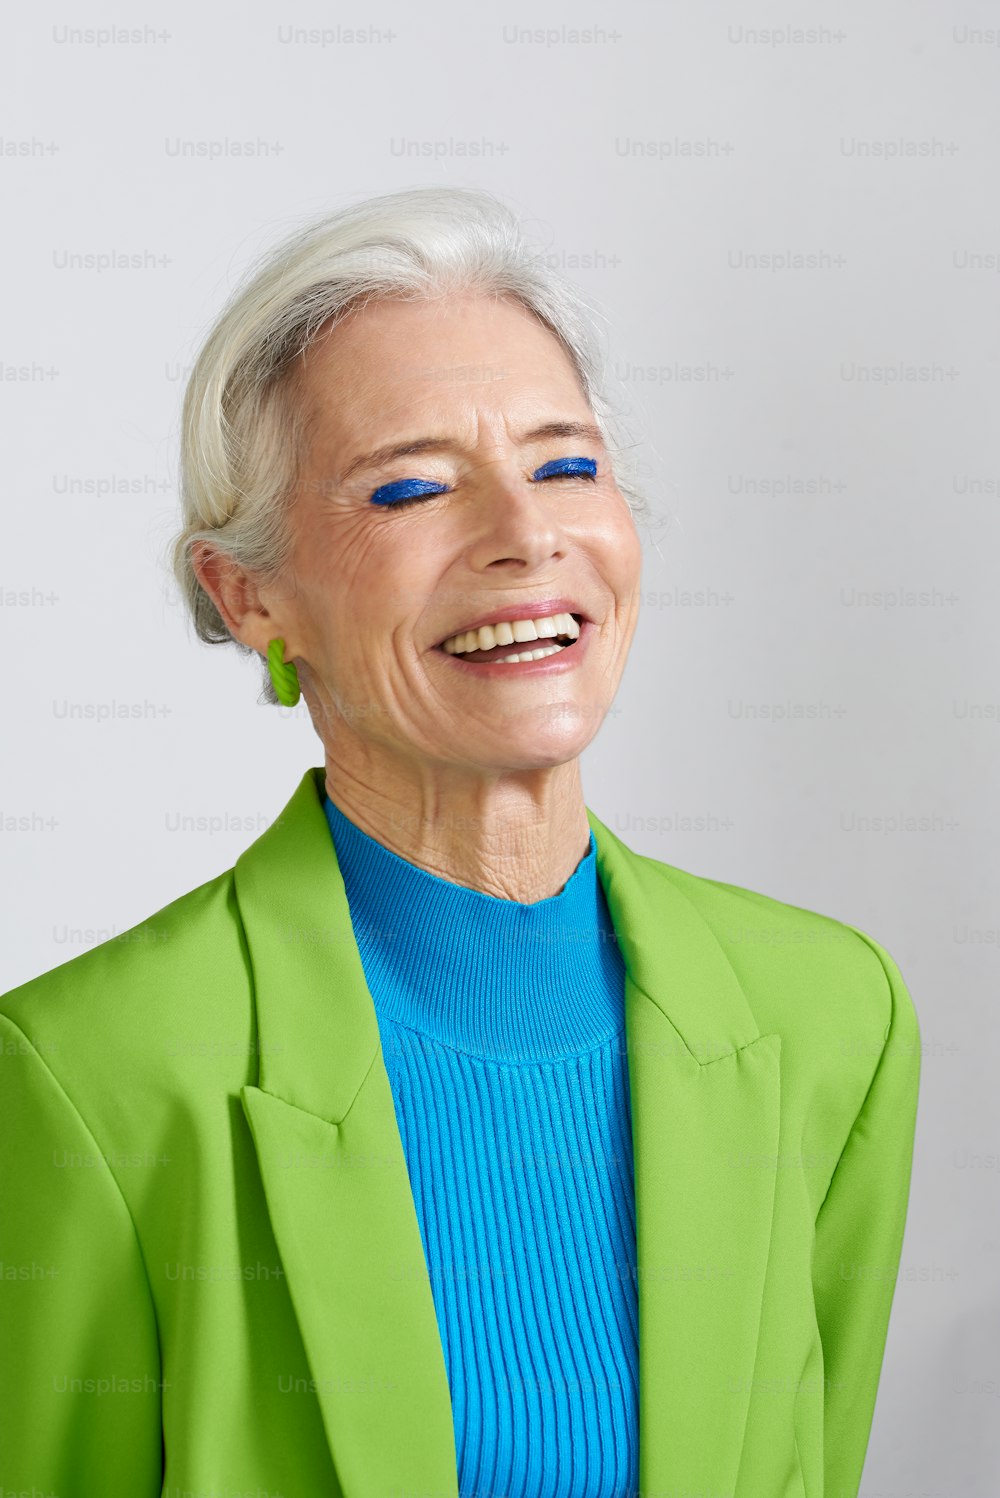 Una mujer con cabello blanco y ojos azules sonriendo